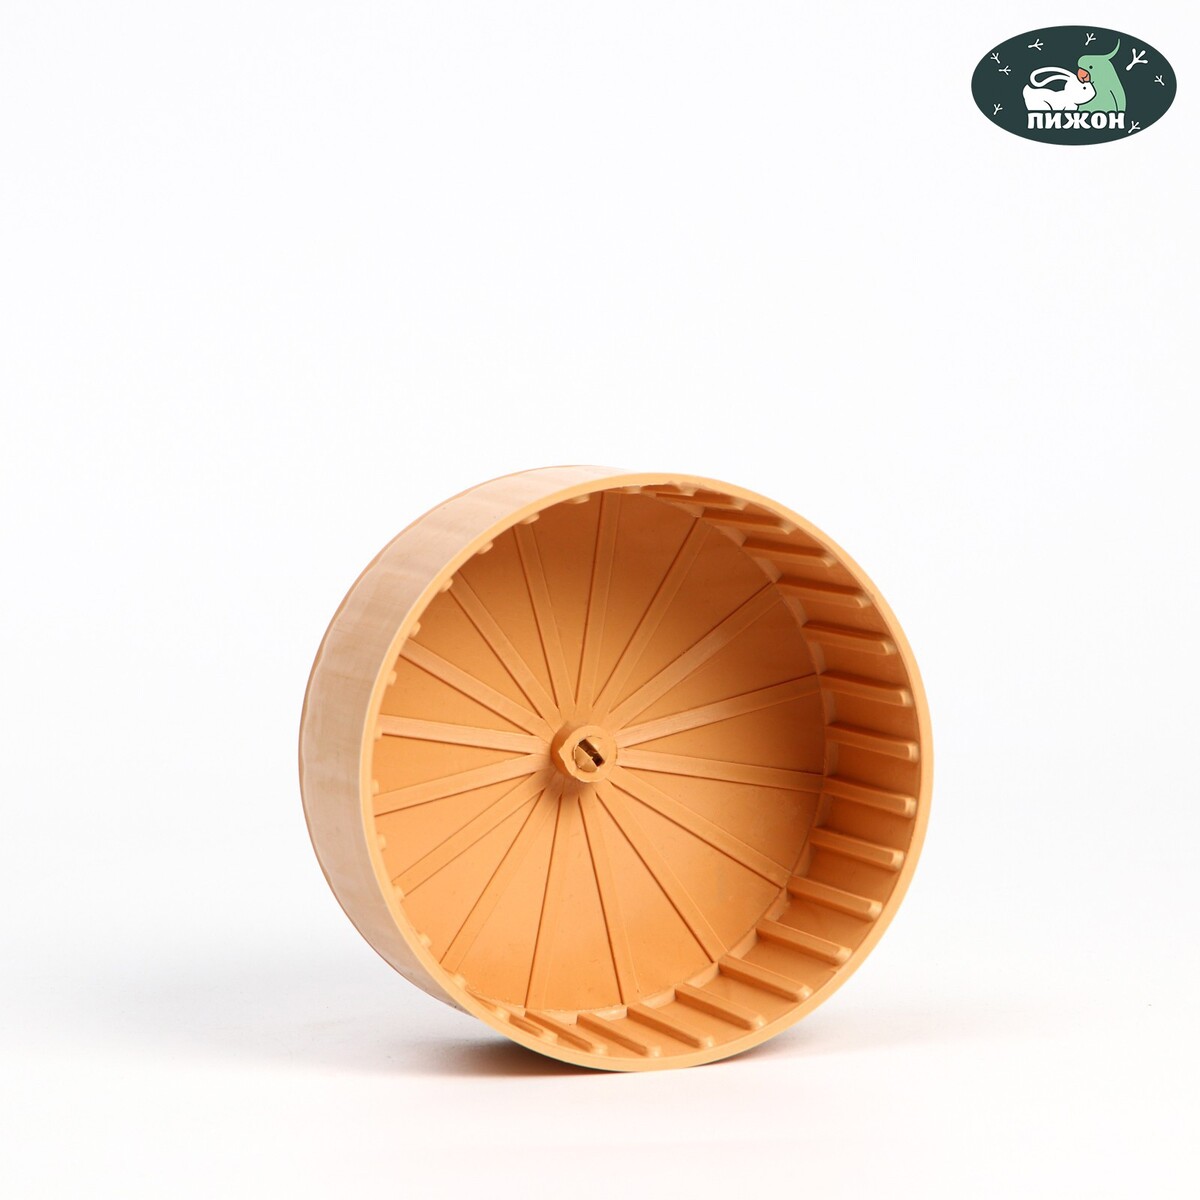 Колесо для грызунов полузакрытое пластиковое, без подставки, 14 см, бежевое колесо для грызунов тихое 13 5 см розовое